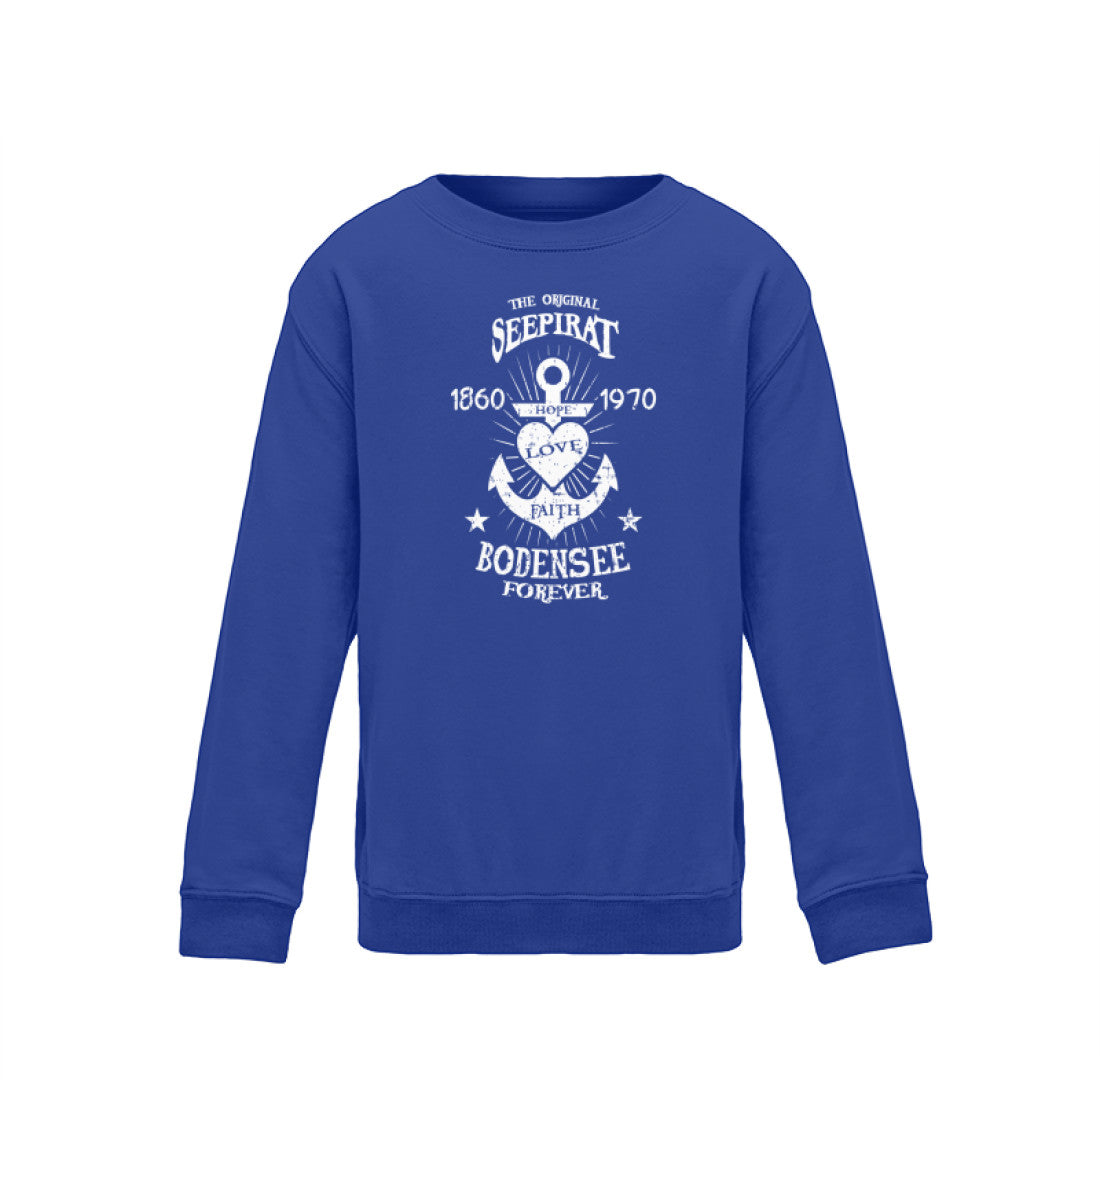 Kinder Sweatshirt Anker Motiv Royal Blue